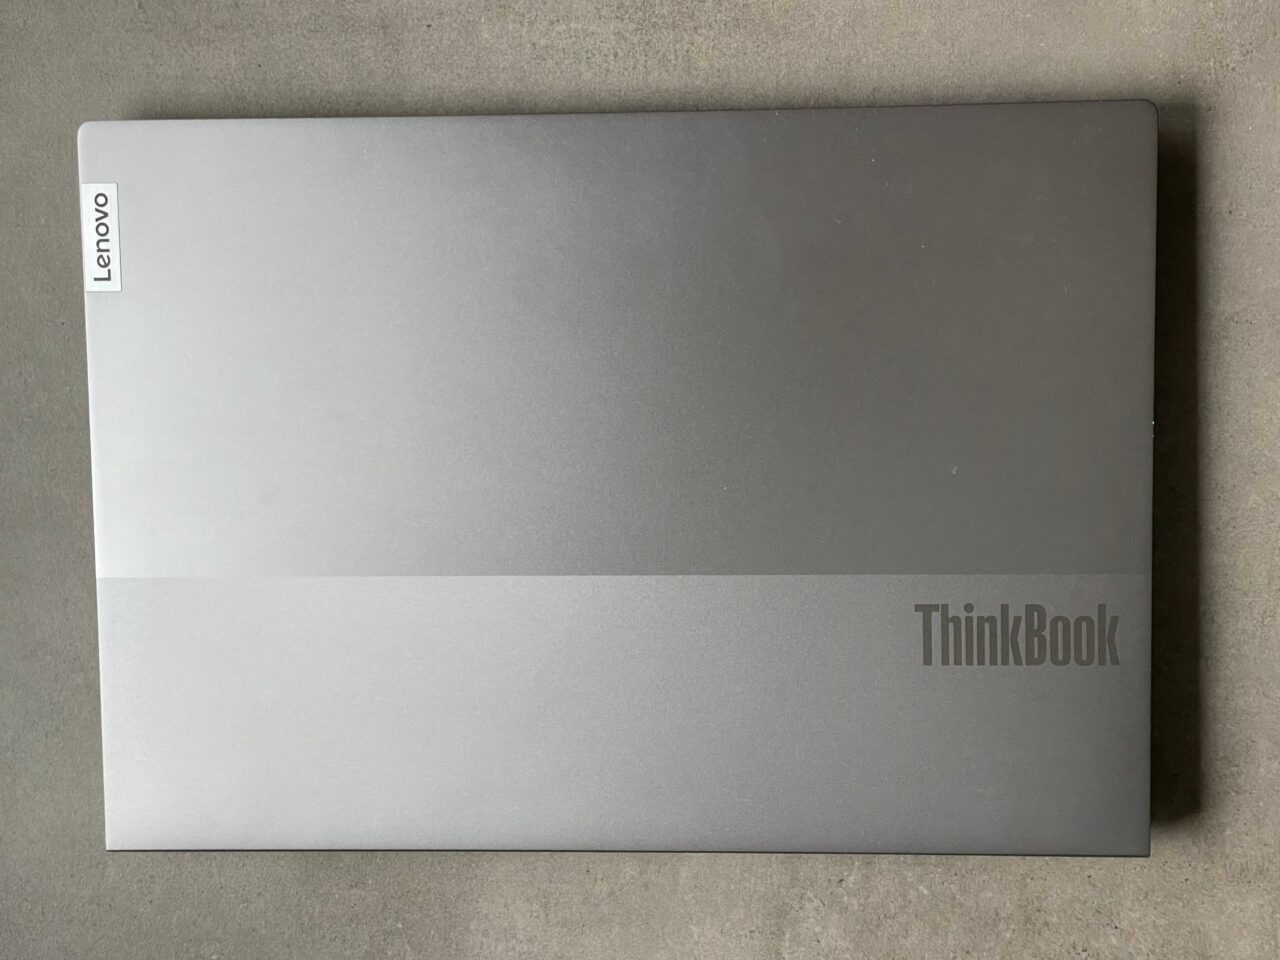 Zamknięty laptop Lenovo ThinkBook leżący na szarym tle.